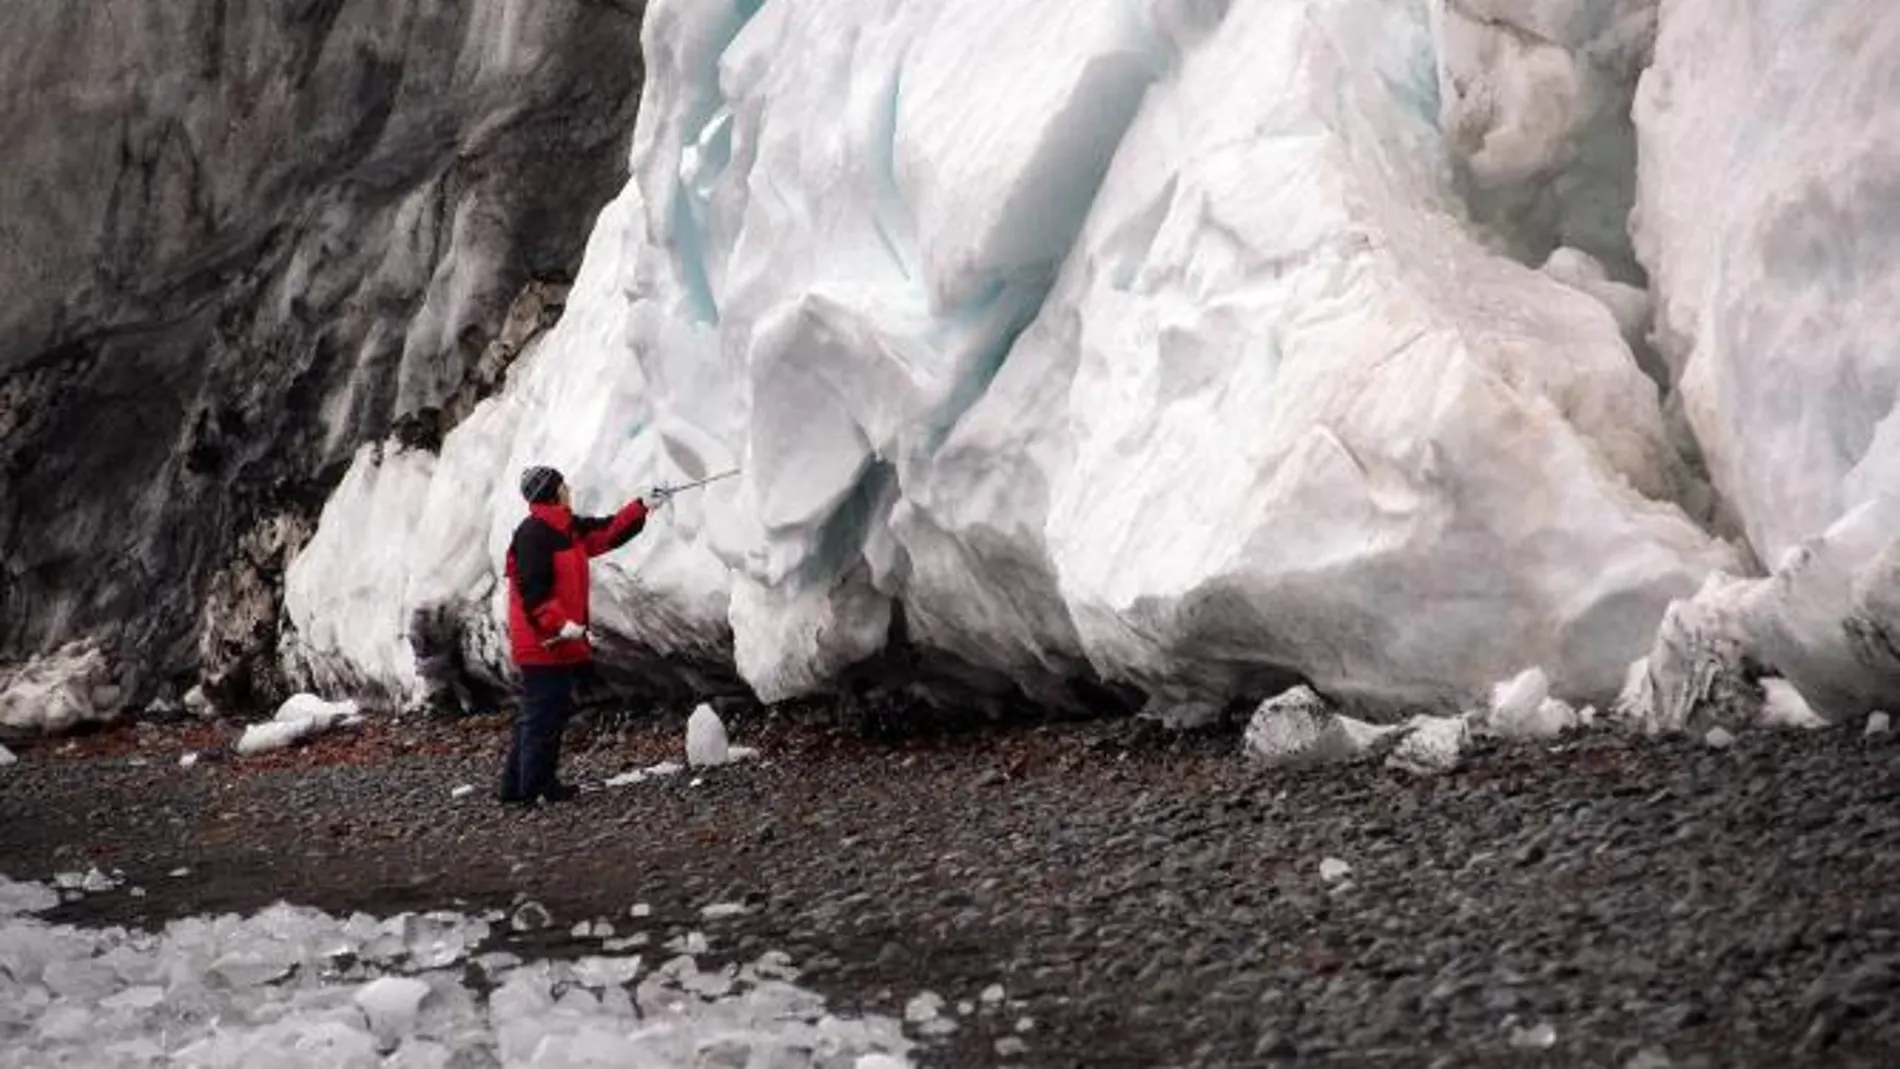 Fotografía cedida por el Instituto Antártico Chileno (INACH) el martes 10 de febrero de 2015, que muestra a la científica chilena Jenny Blamey de la Fundación Biociencia junto a un bloque de hielo el pasado 26 de enero en la Isla Decepción (Antártida).